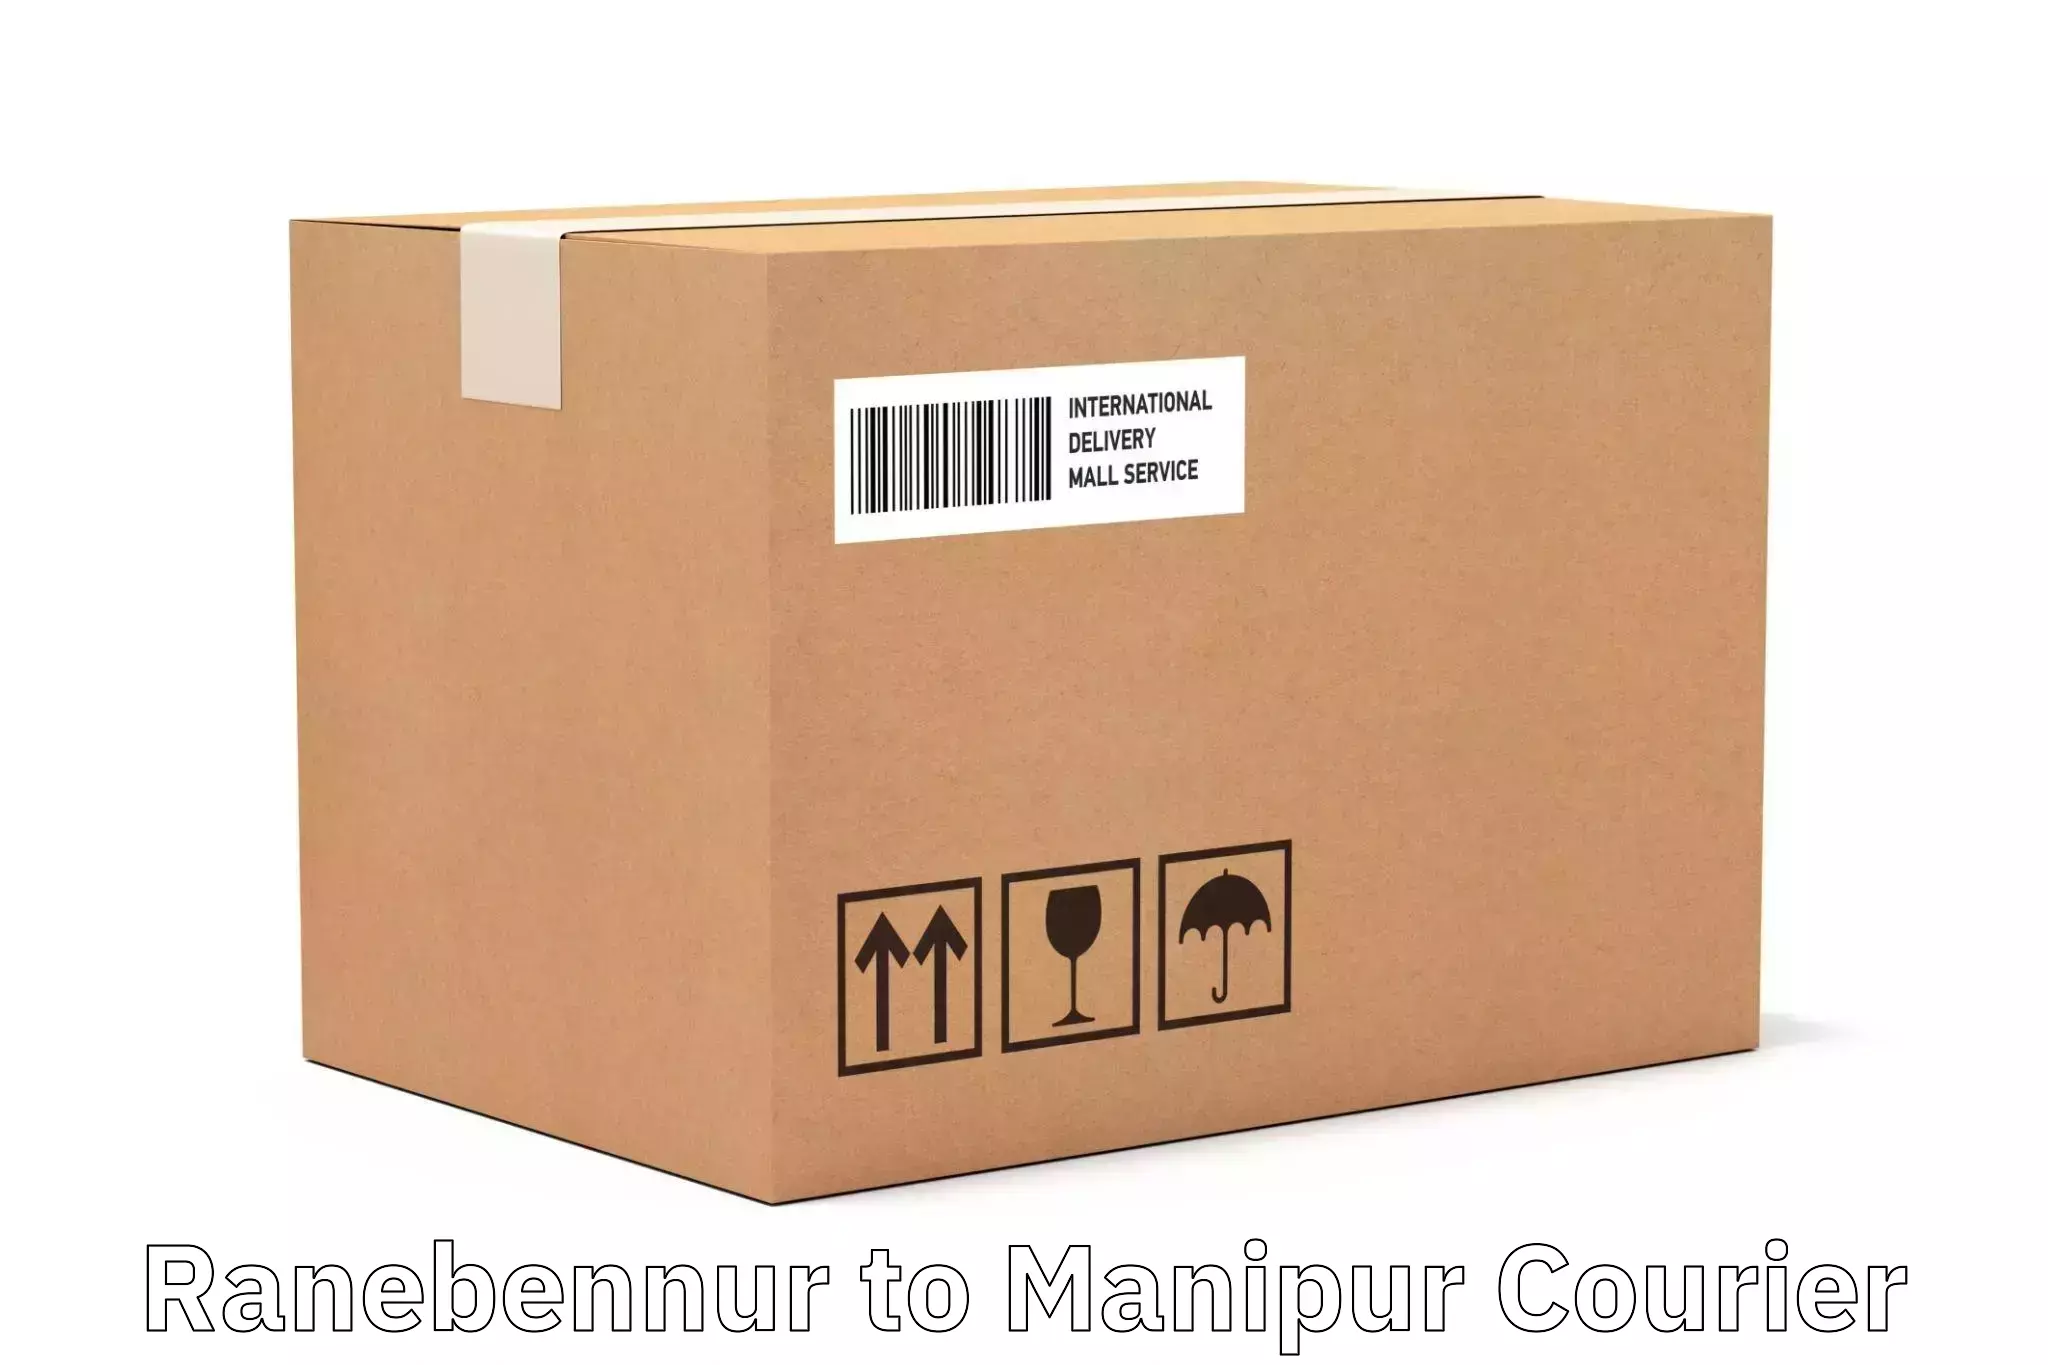 Affordable parcel service Ranebennur to Chandel